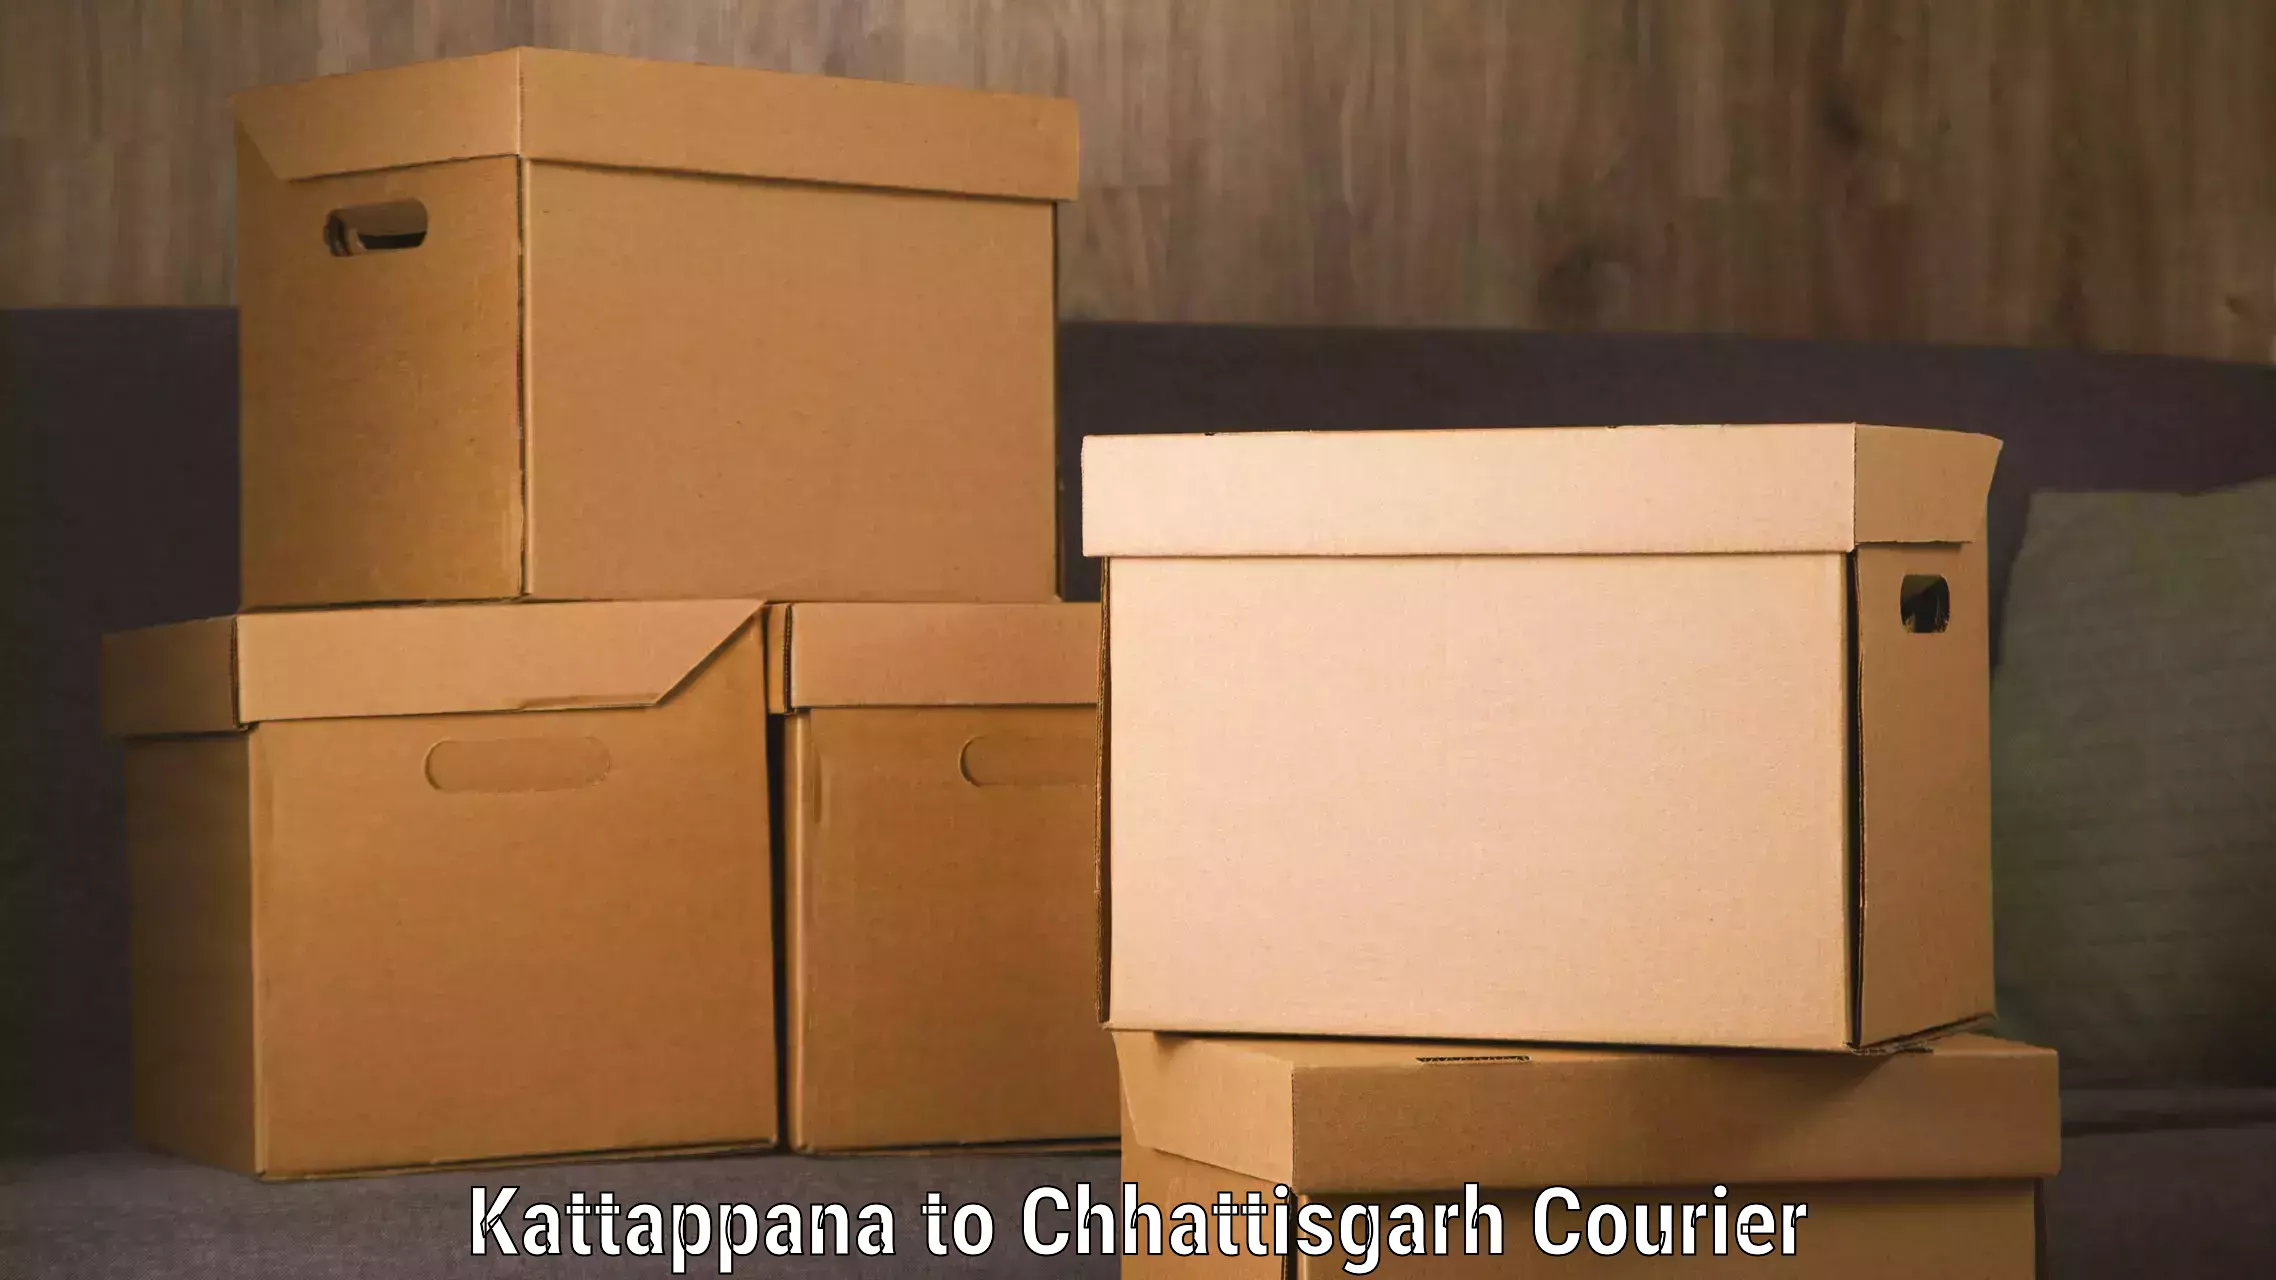 Holiday shipping services Kattappana to Jagdalpur